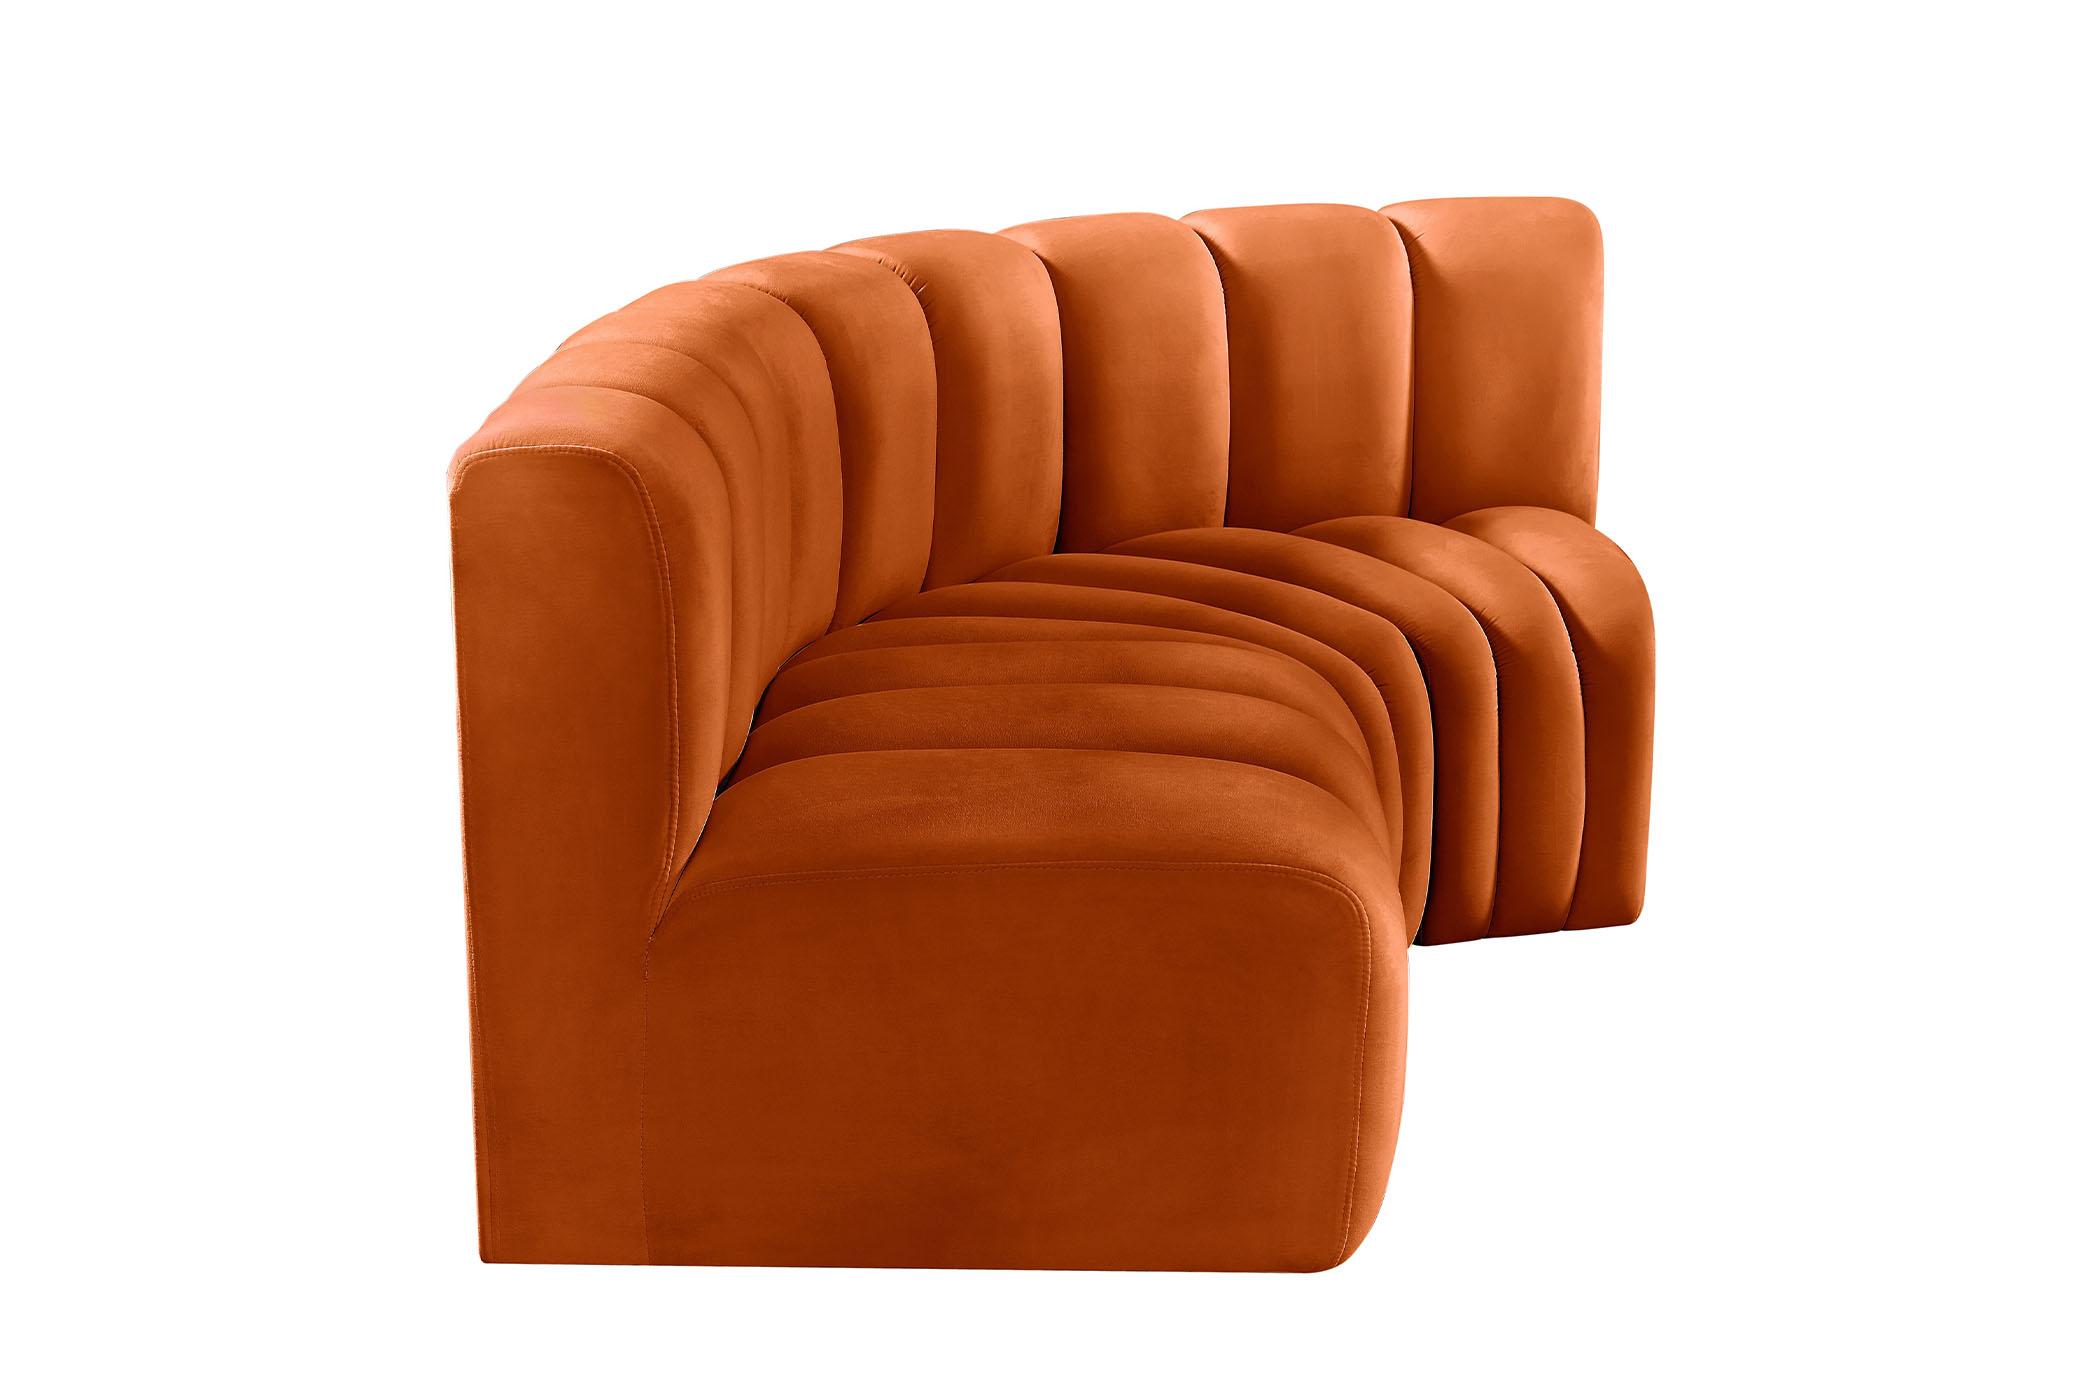 

    
103Cognac-S3A Meridian Furniture Modular Sectional Sofa
